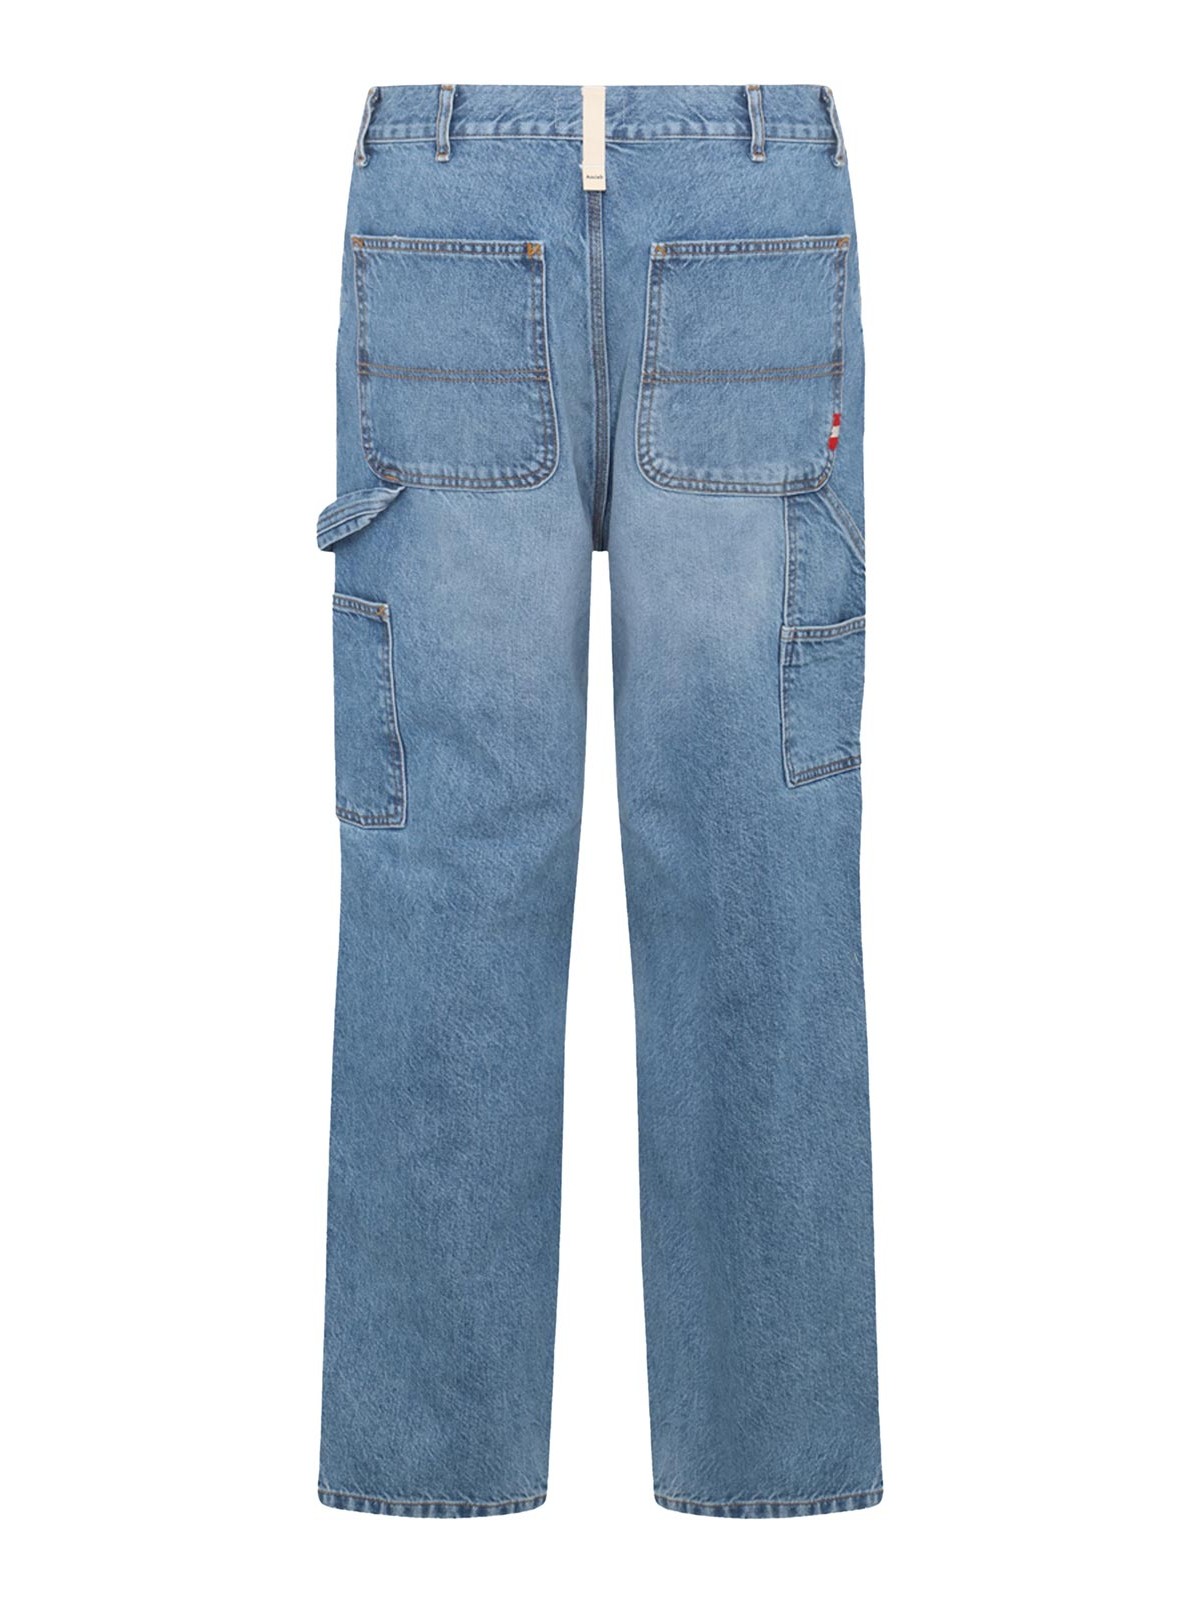 Amish Blue Cotton Jeans